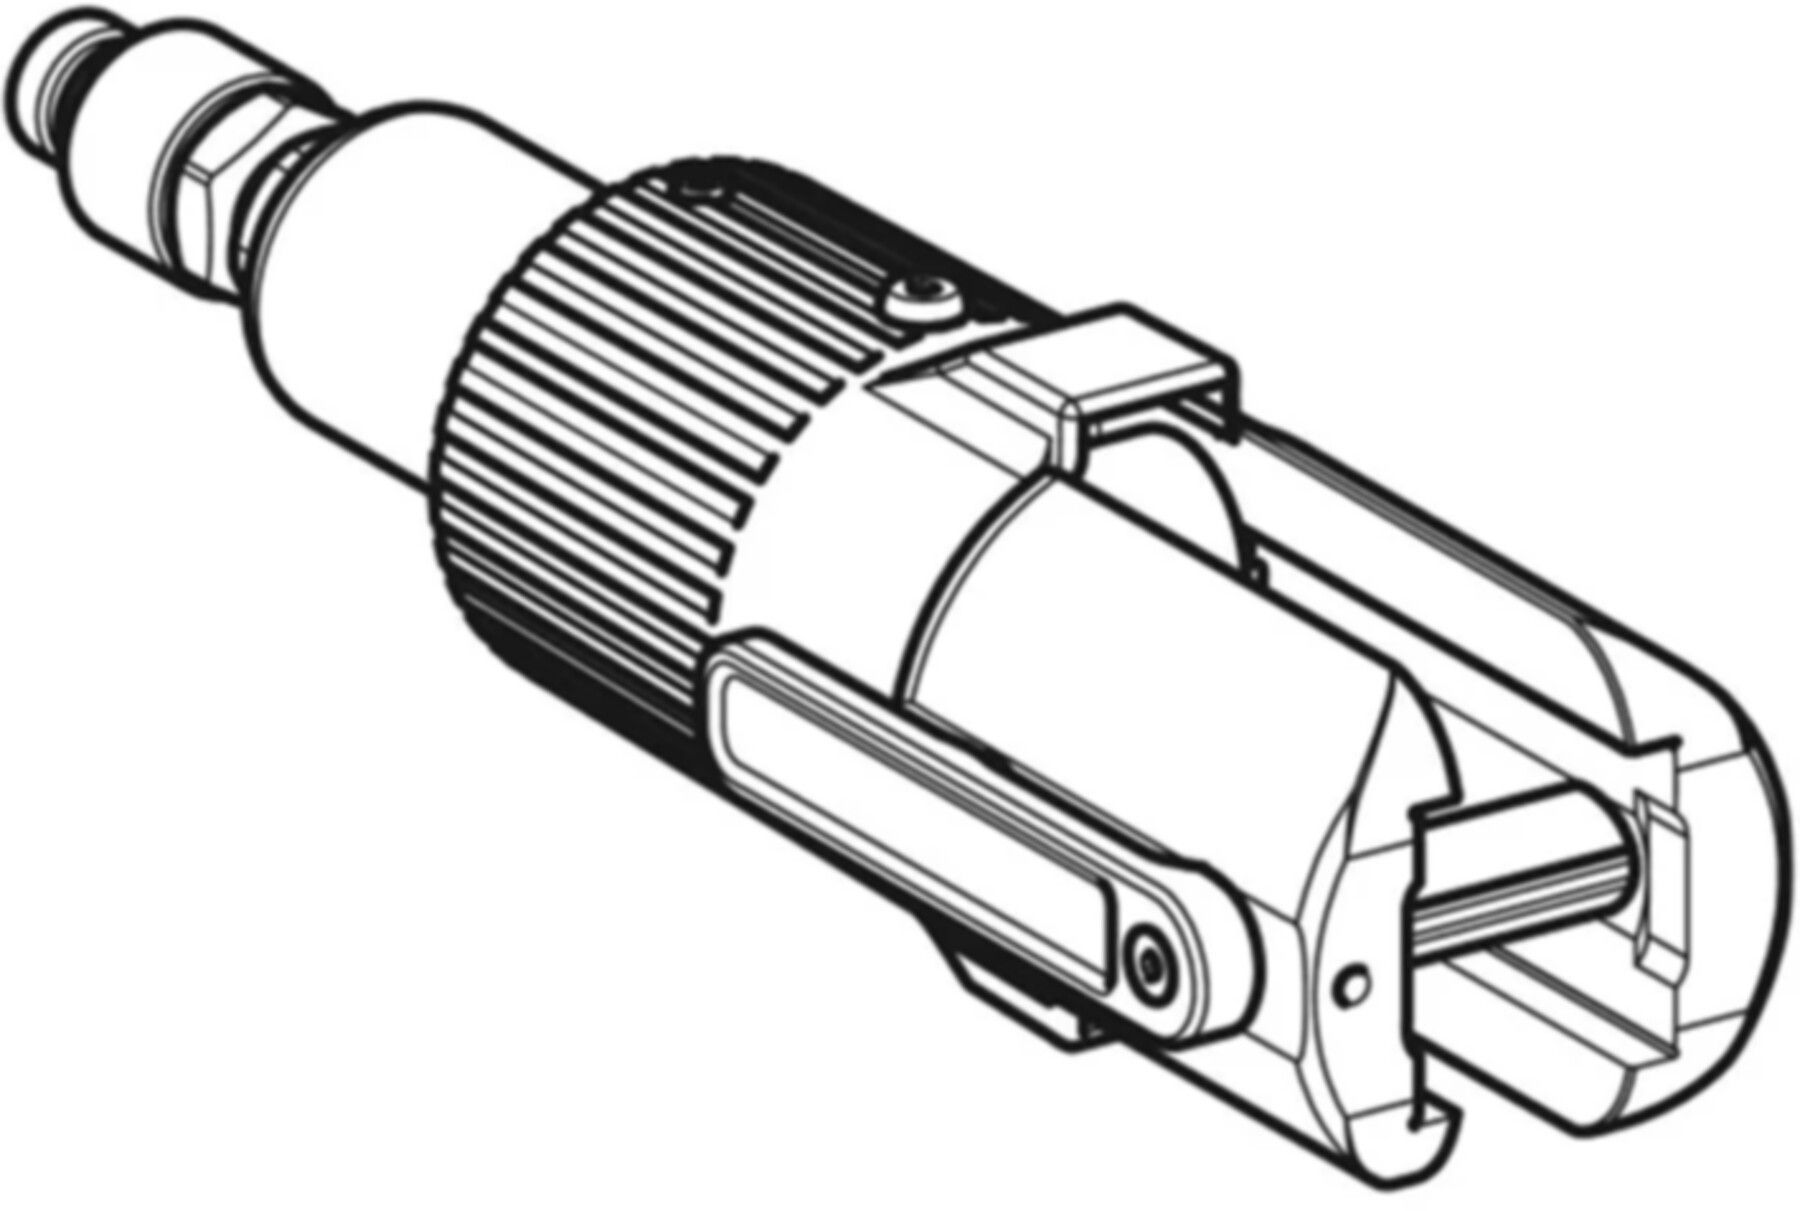 Hydraulikzylinder (2) 691.221.00.1 - Mapress-Werkzeuge und Zubehör